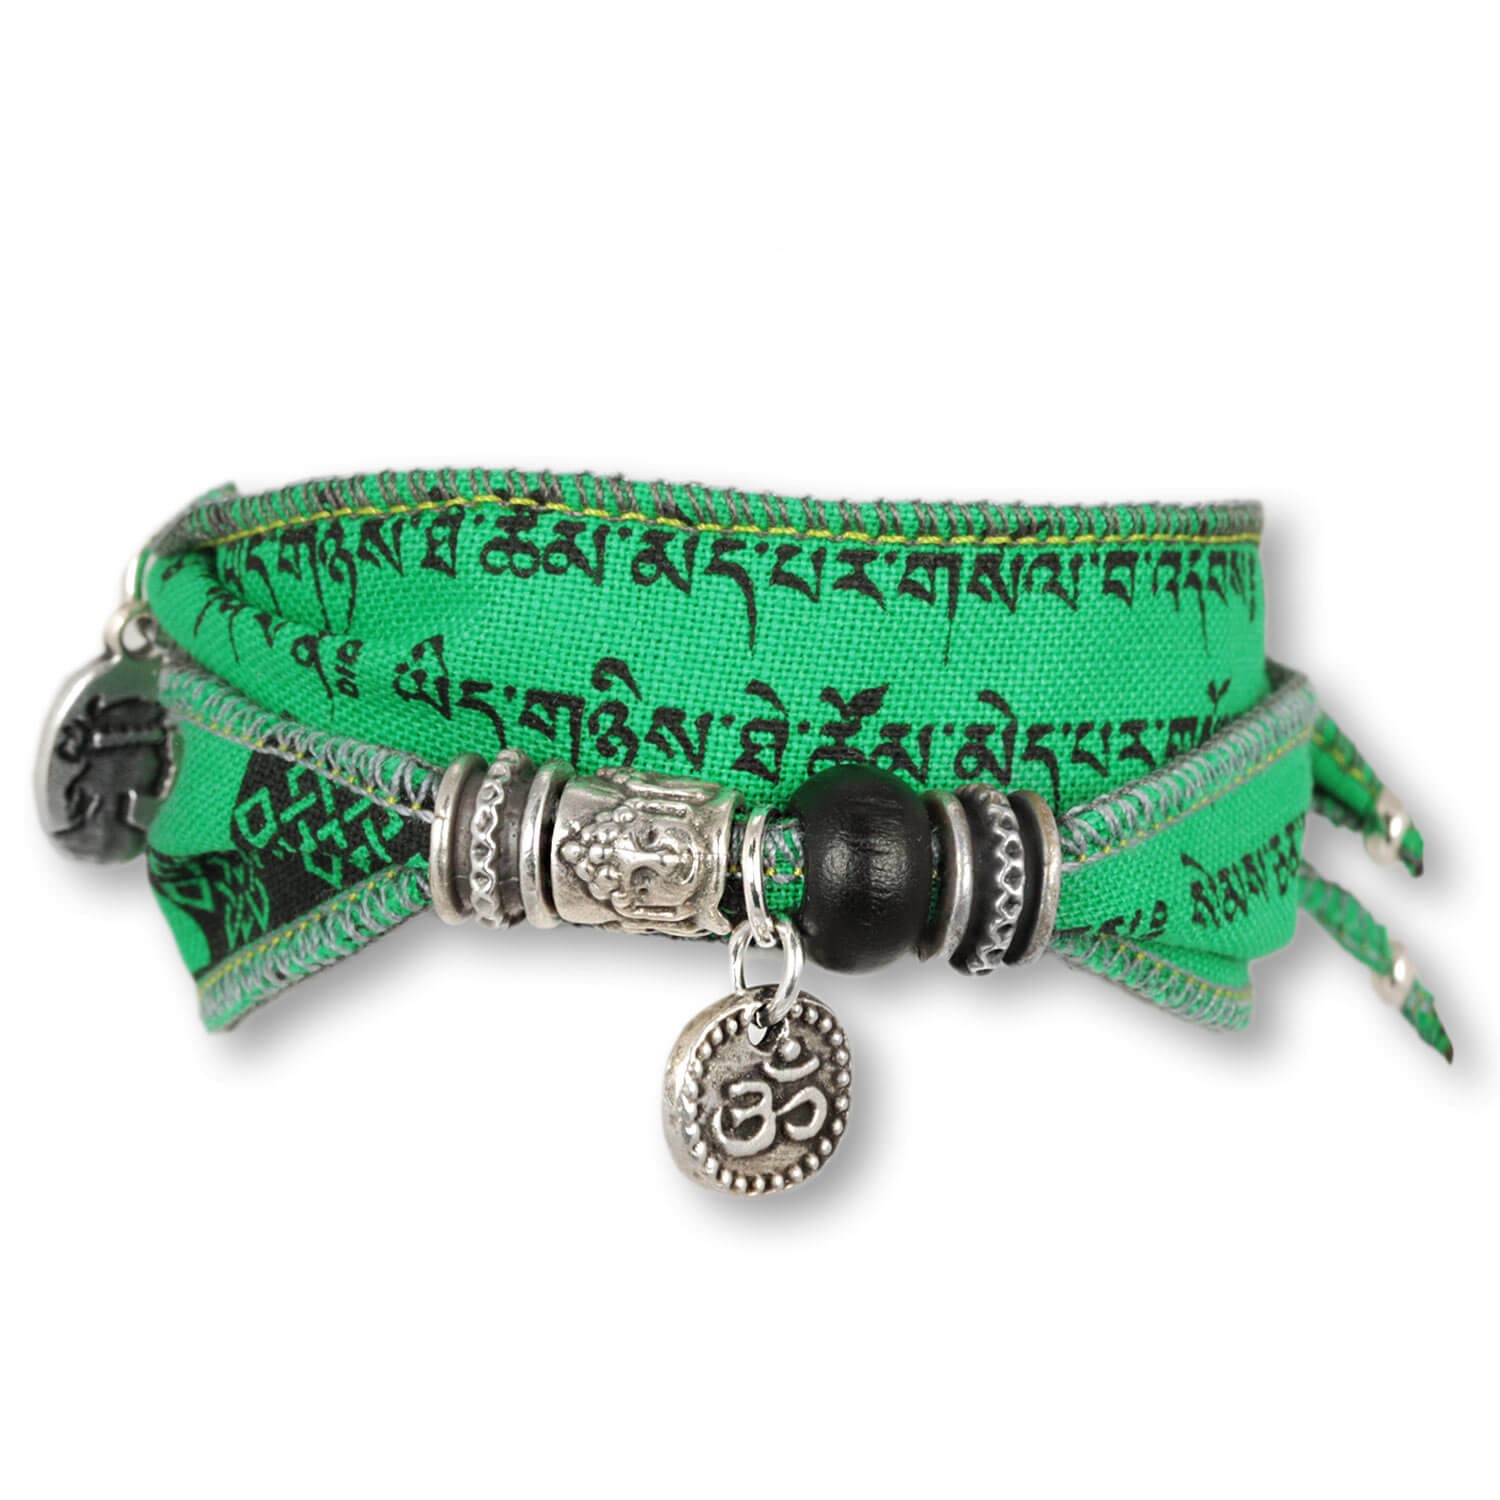 Water Mantra - Tibetan Wish Wunscharmband aus tibetischen Gebetsfahnen